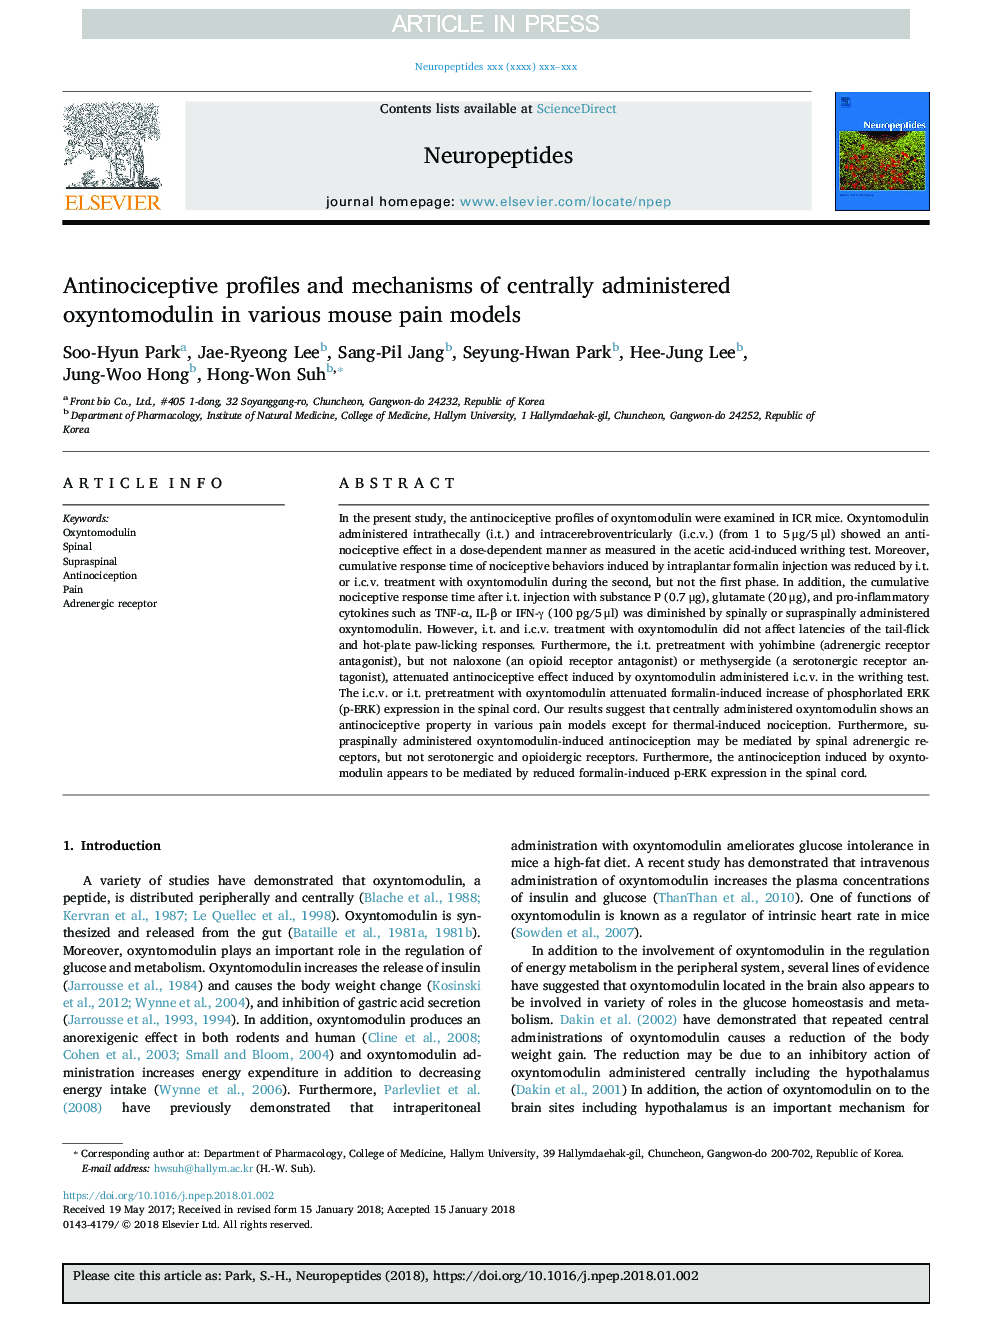 پروفایل ضد تشنجی و مکانیسم های اکسینتومودولین مرکزی در مدل های مختلف درد موش 